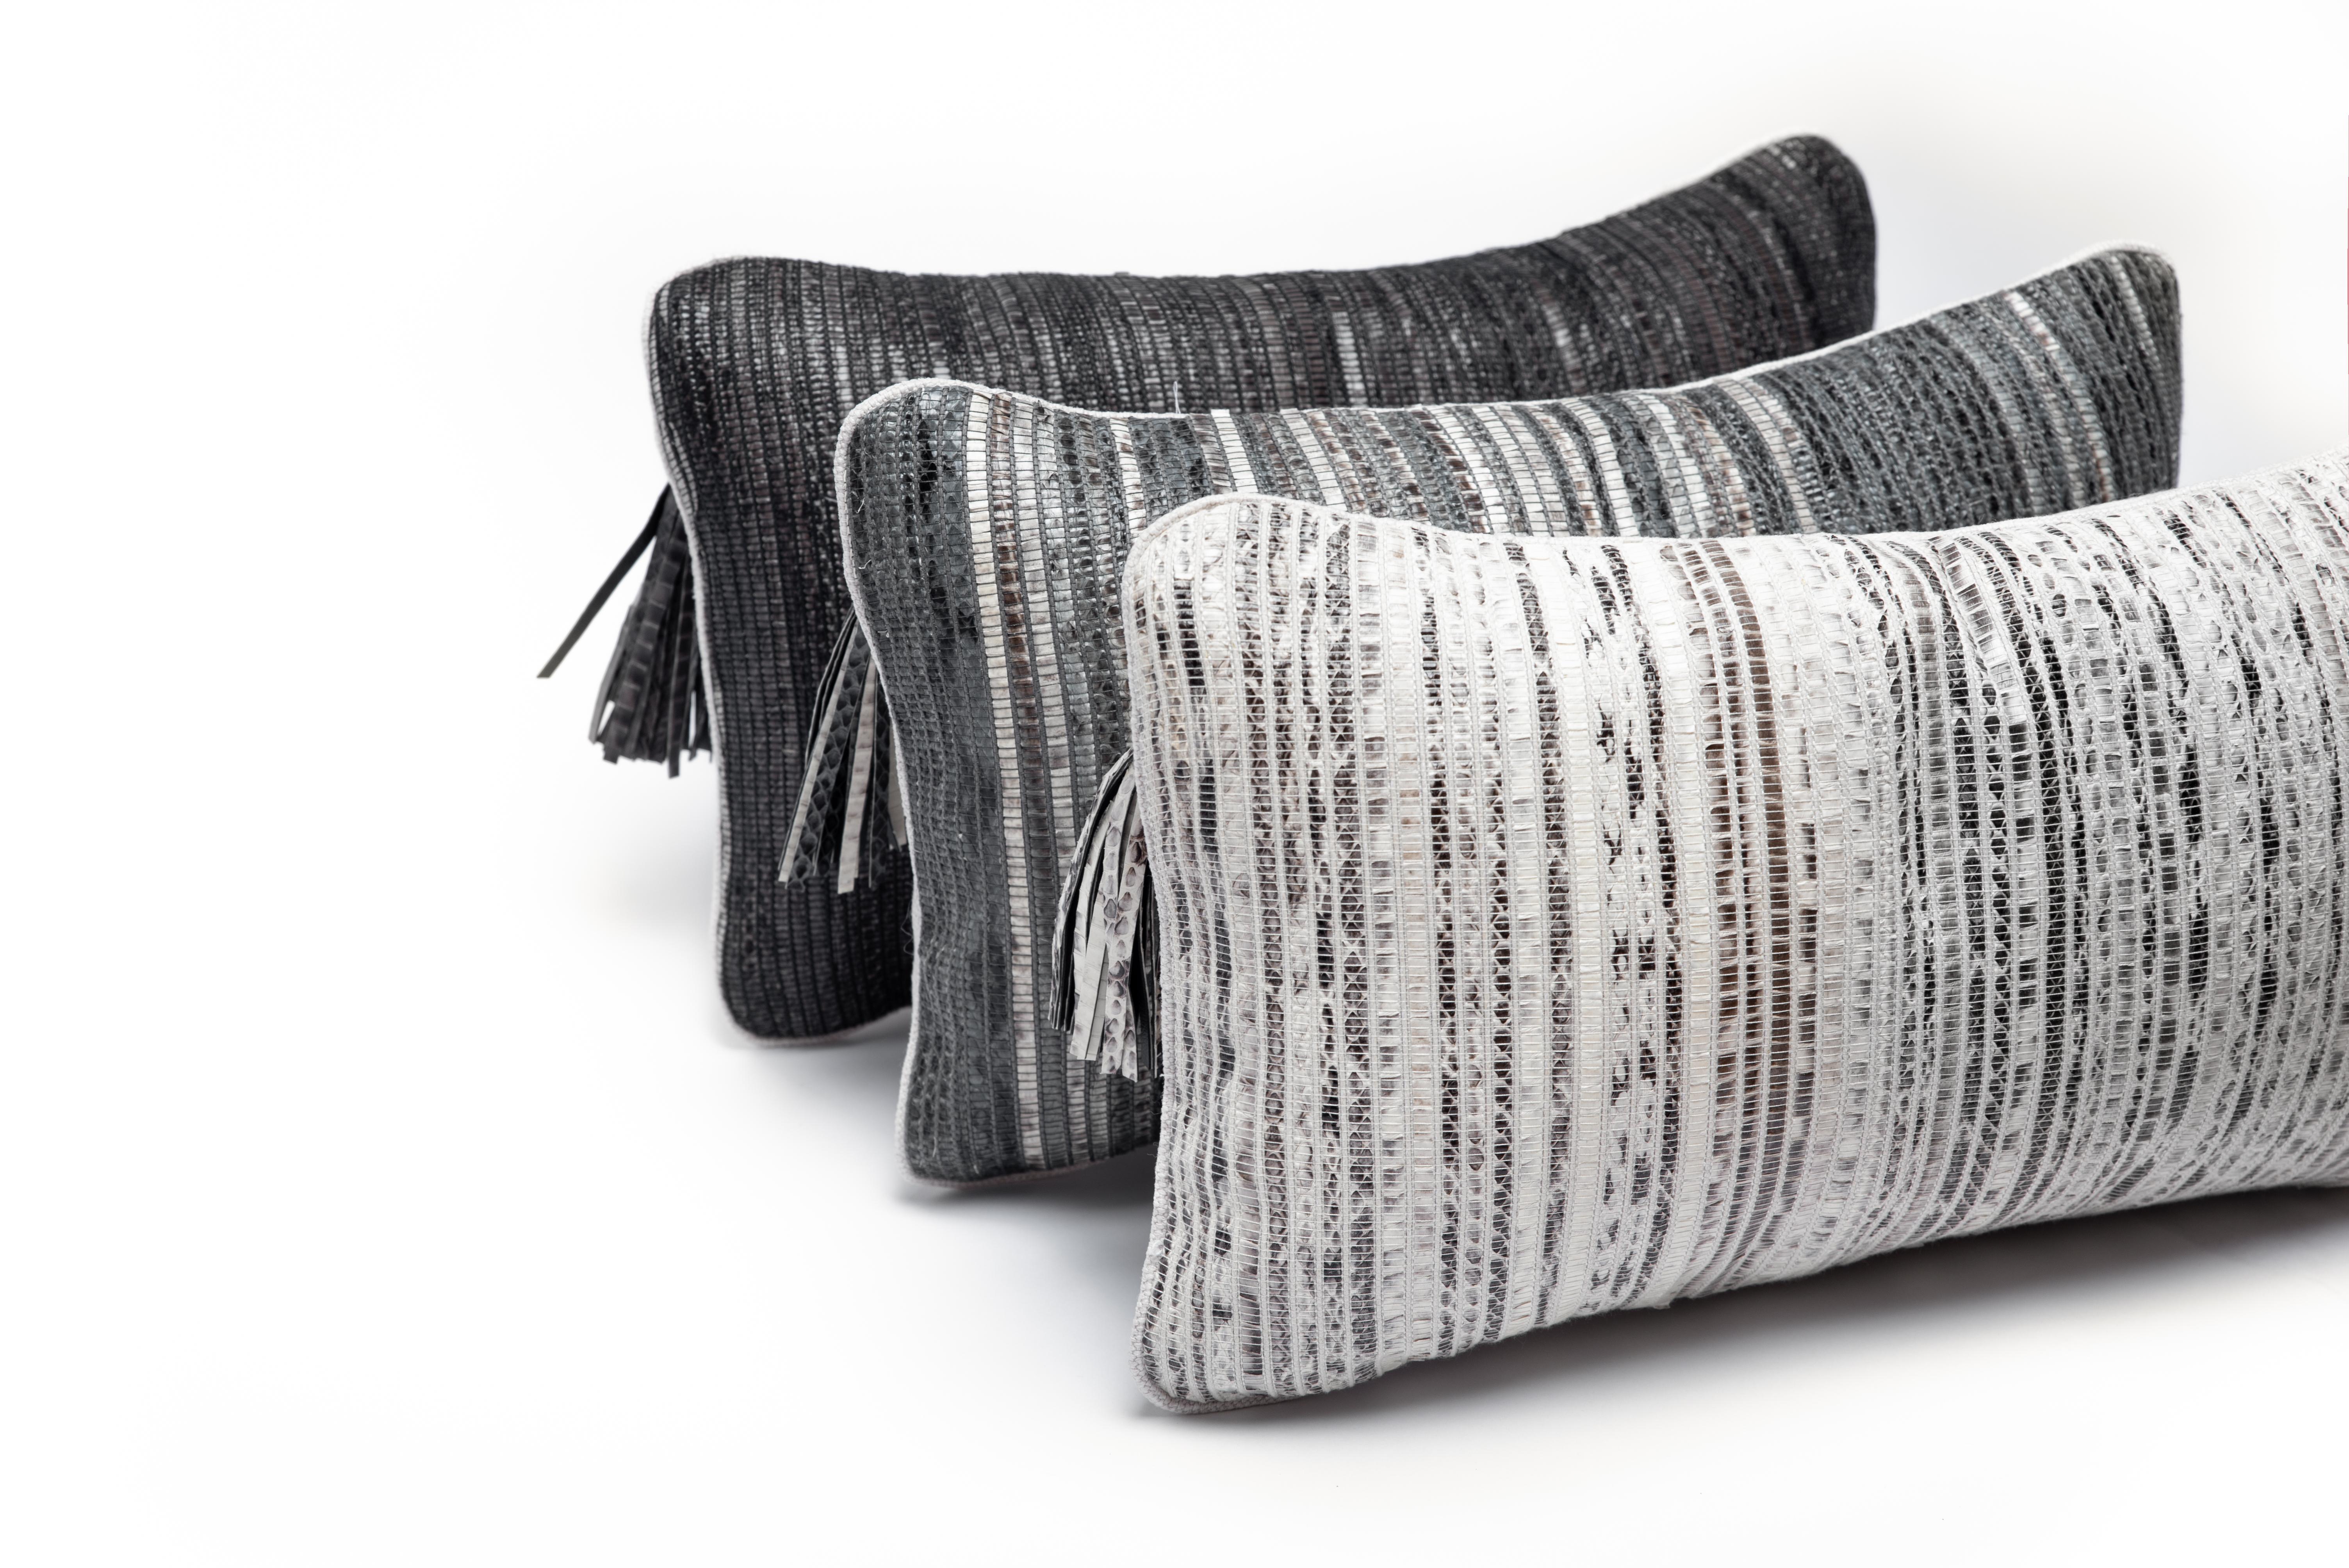 Das Woven Snakeskin-Kissen von Kifu Paris ist das ultimative Luxus-Wohntextil. Dieses Textil ist einzigartig und originell für die Marke, die traditionelle Webtechniken mit Holzwebstühlen anwendet, um dieses geschmeidige und exotische Textil zu